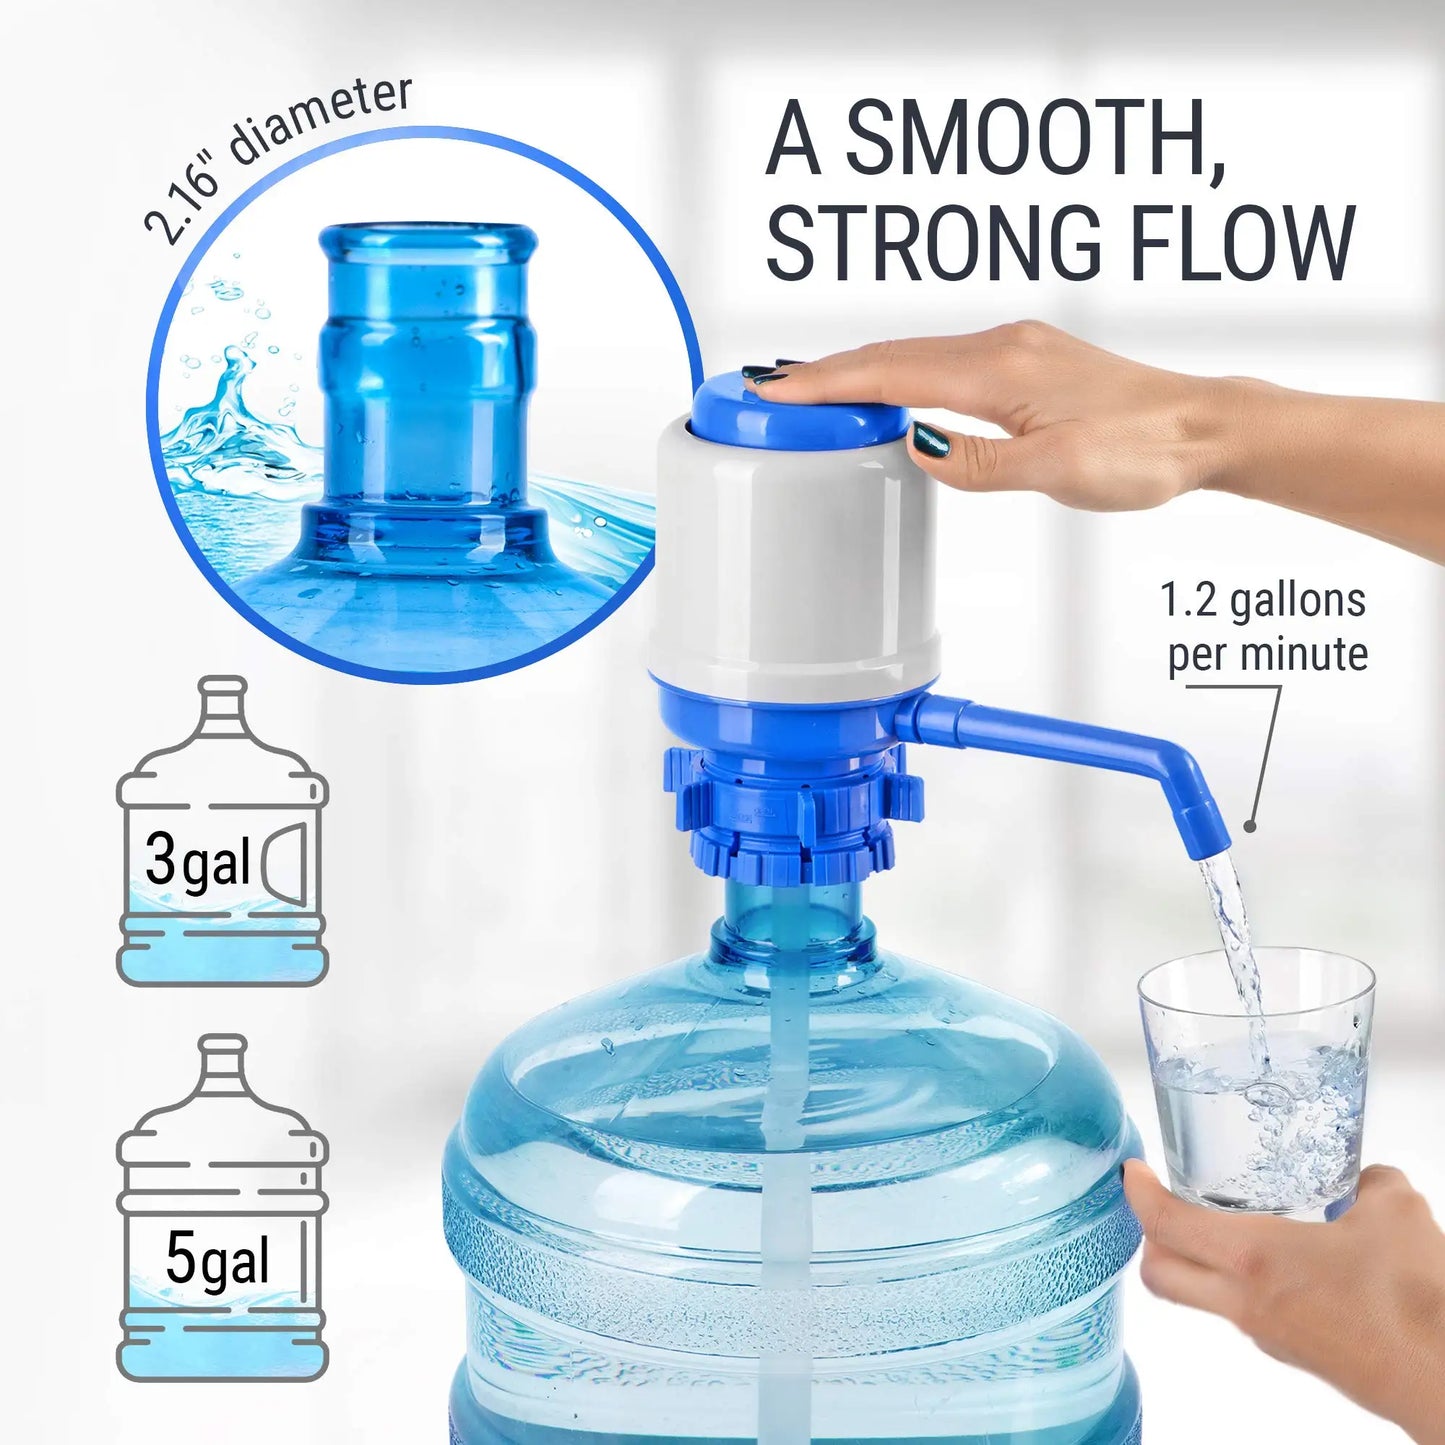 Manual Pump Dispenser Water Bottles - Fits Most 5 Gallon Water Dispenser